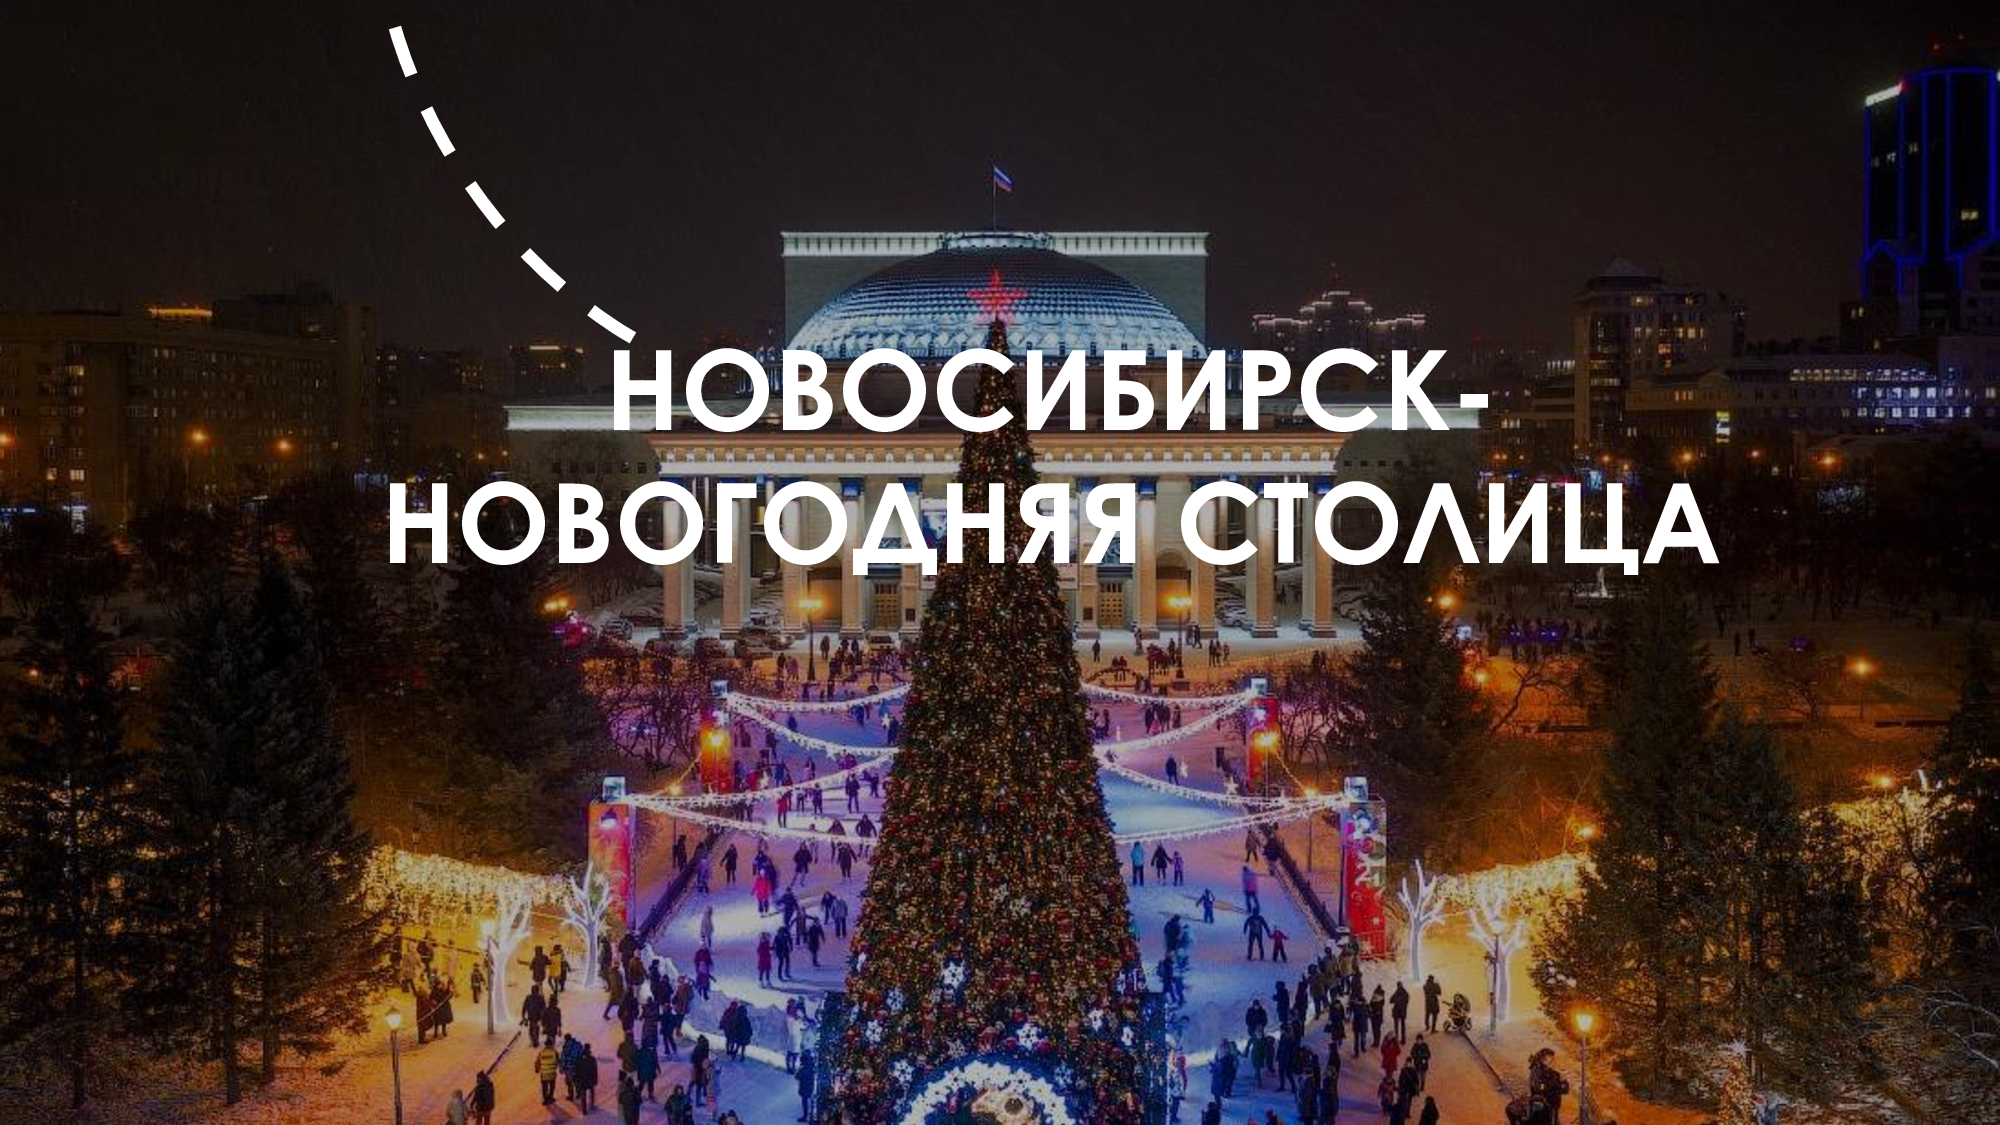 Столица нового года россии. Новосибирск столица Сибири 2023. Новосибирск новый год. Новосибирск Новогодняя столица. Новогодняя столица России 2022-2023.